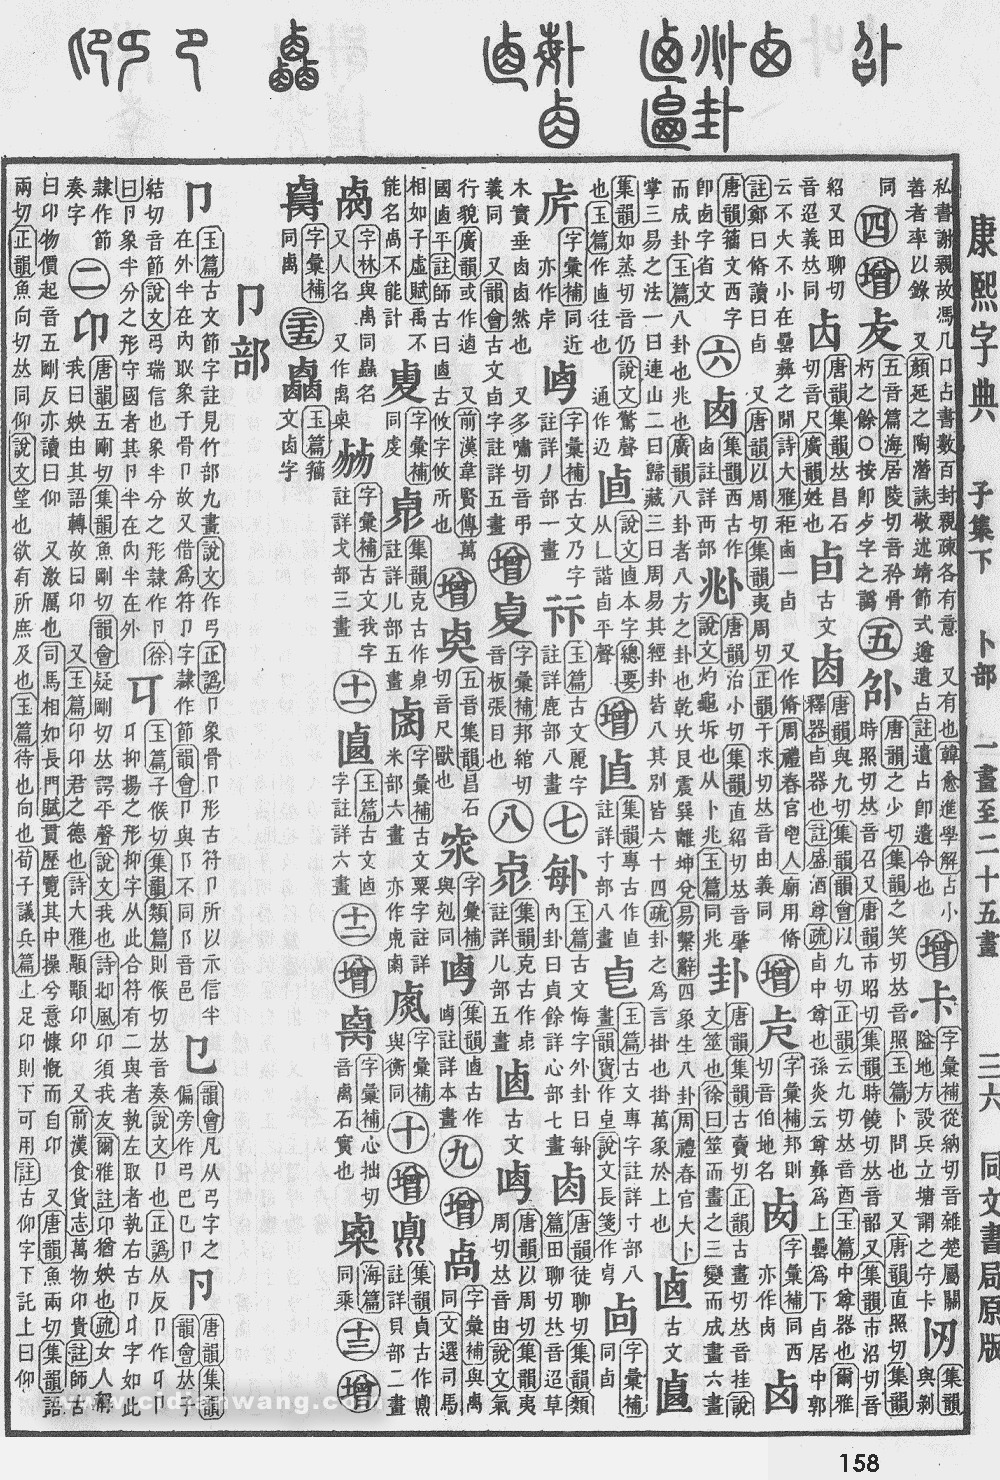 康熙字典掃描版第158頁